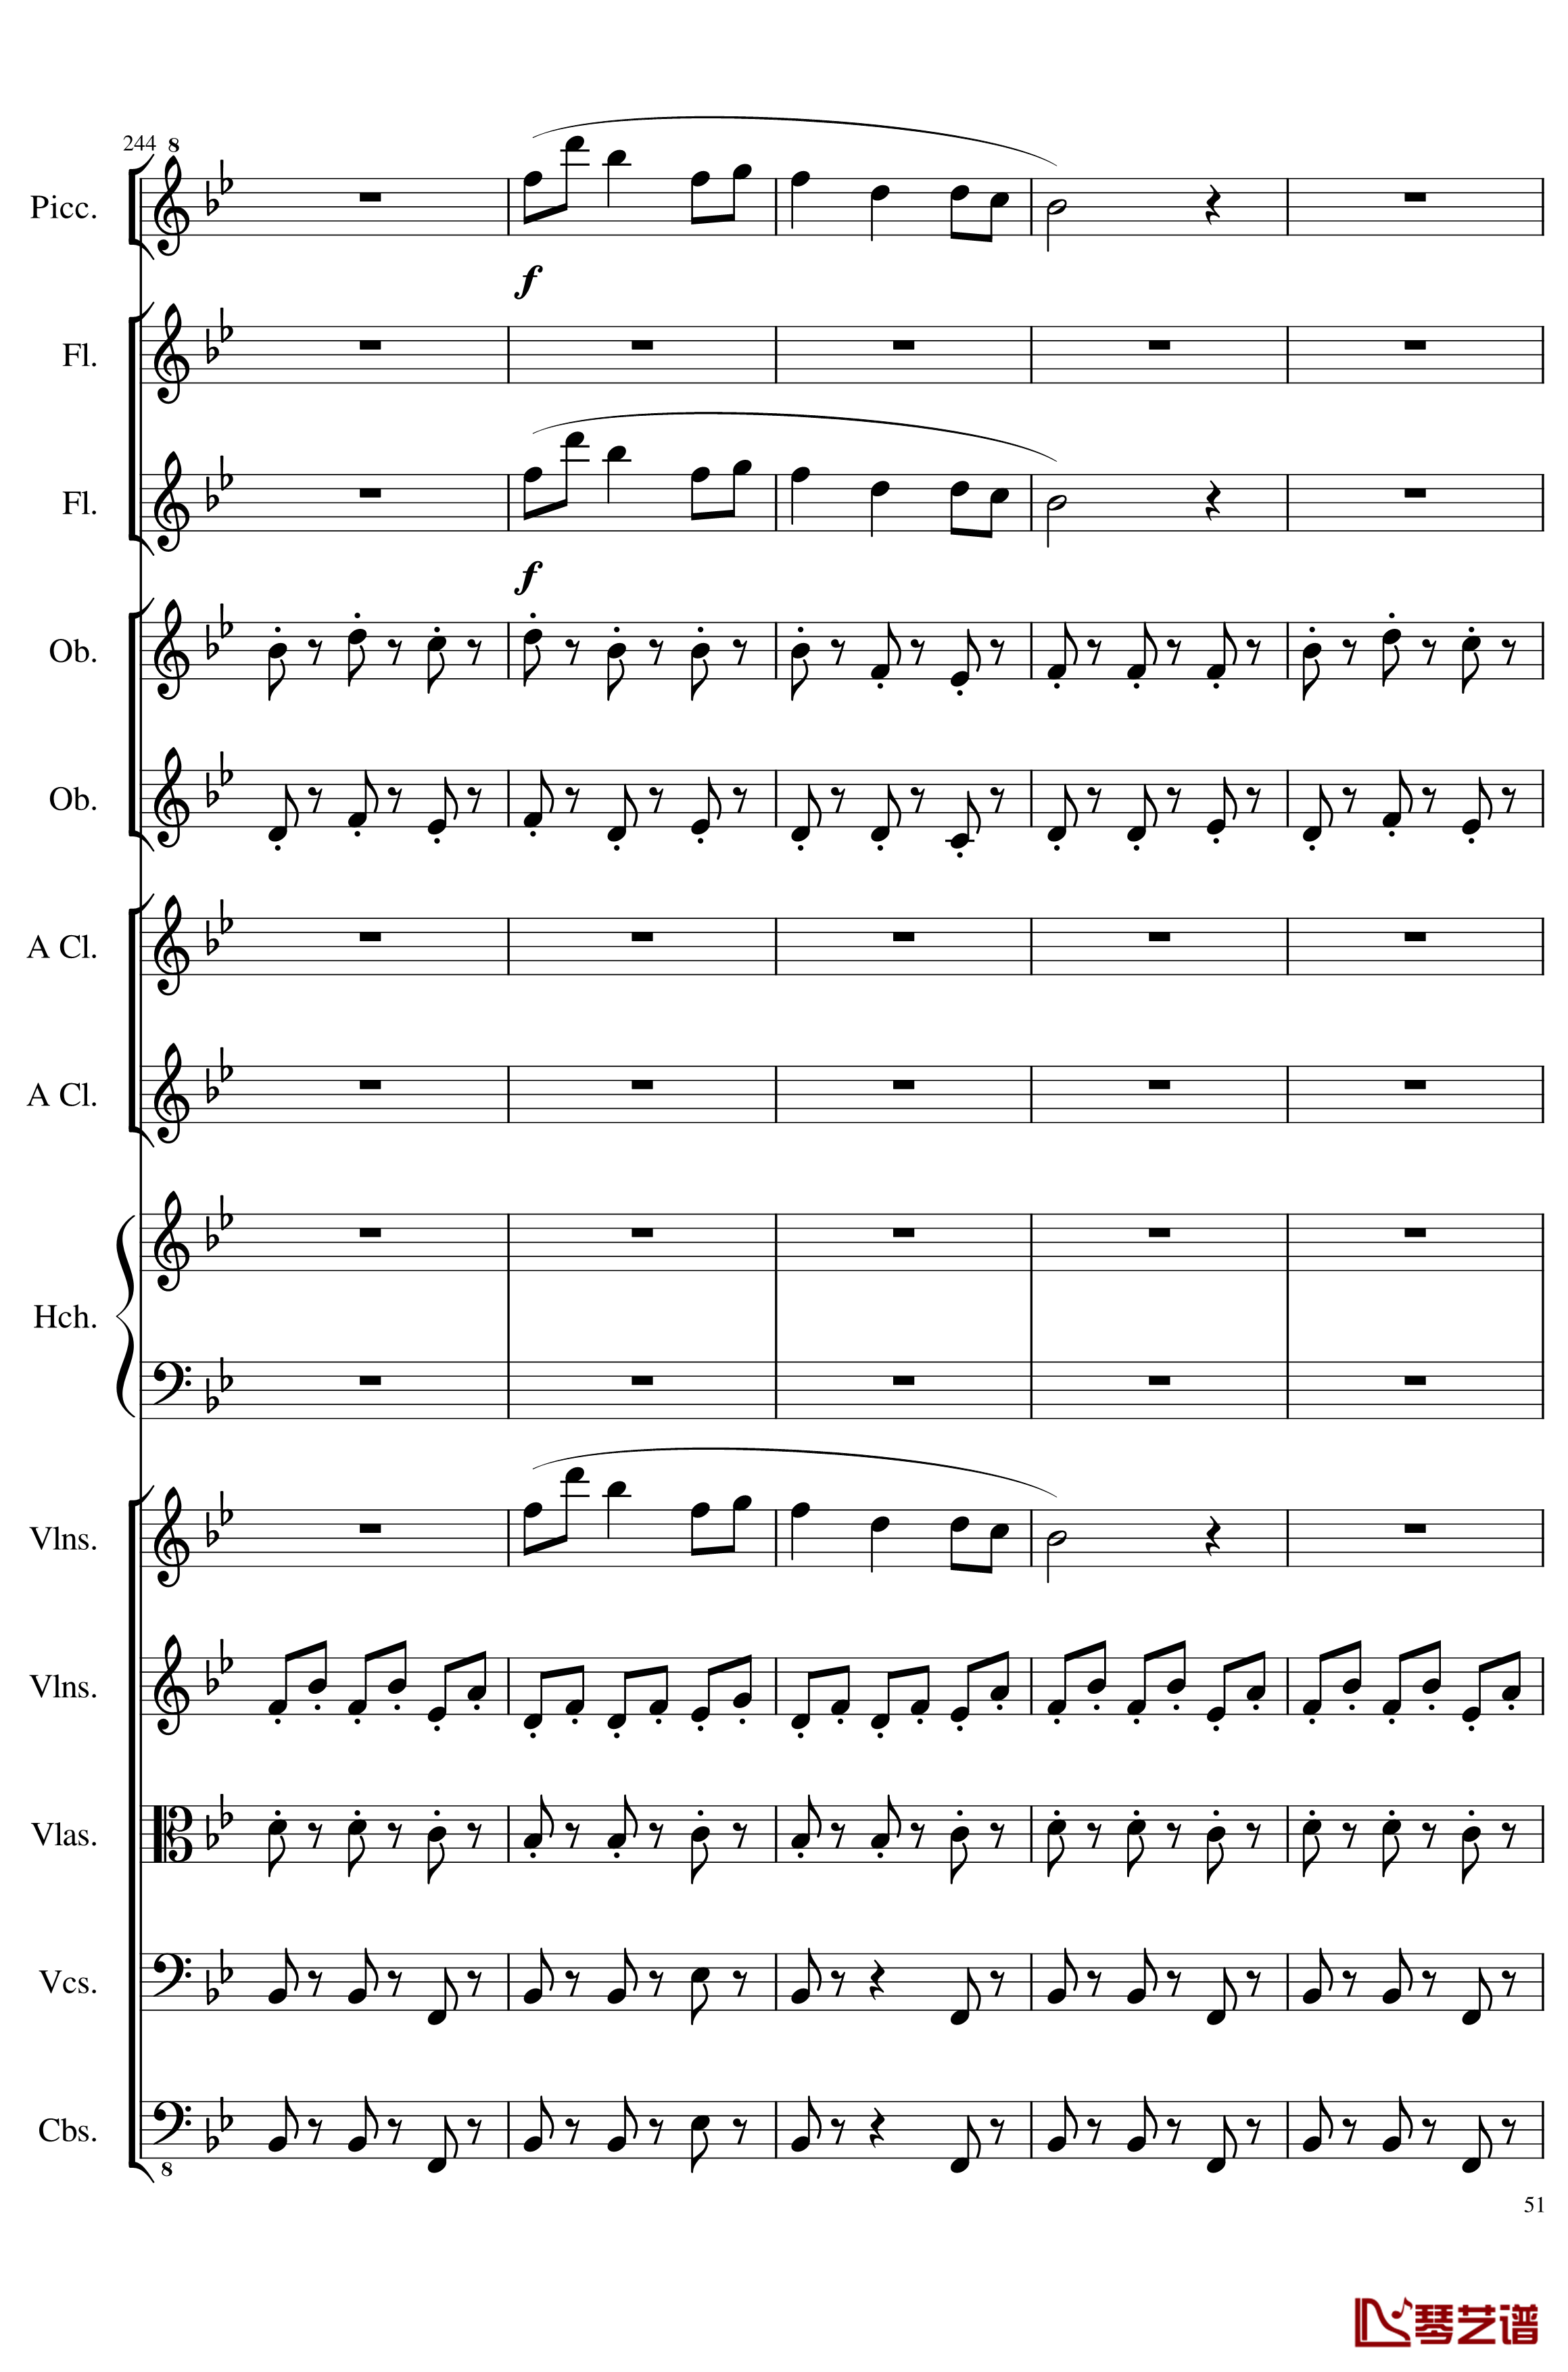 7 Contredanses No.1-7, Op.124钢琴谱-7首乡村舞曲，第一至第七，作品124-一个球51